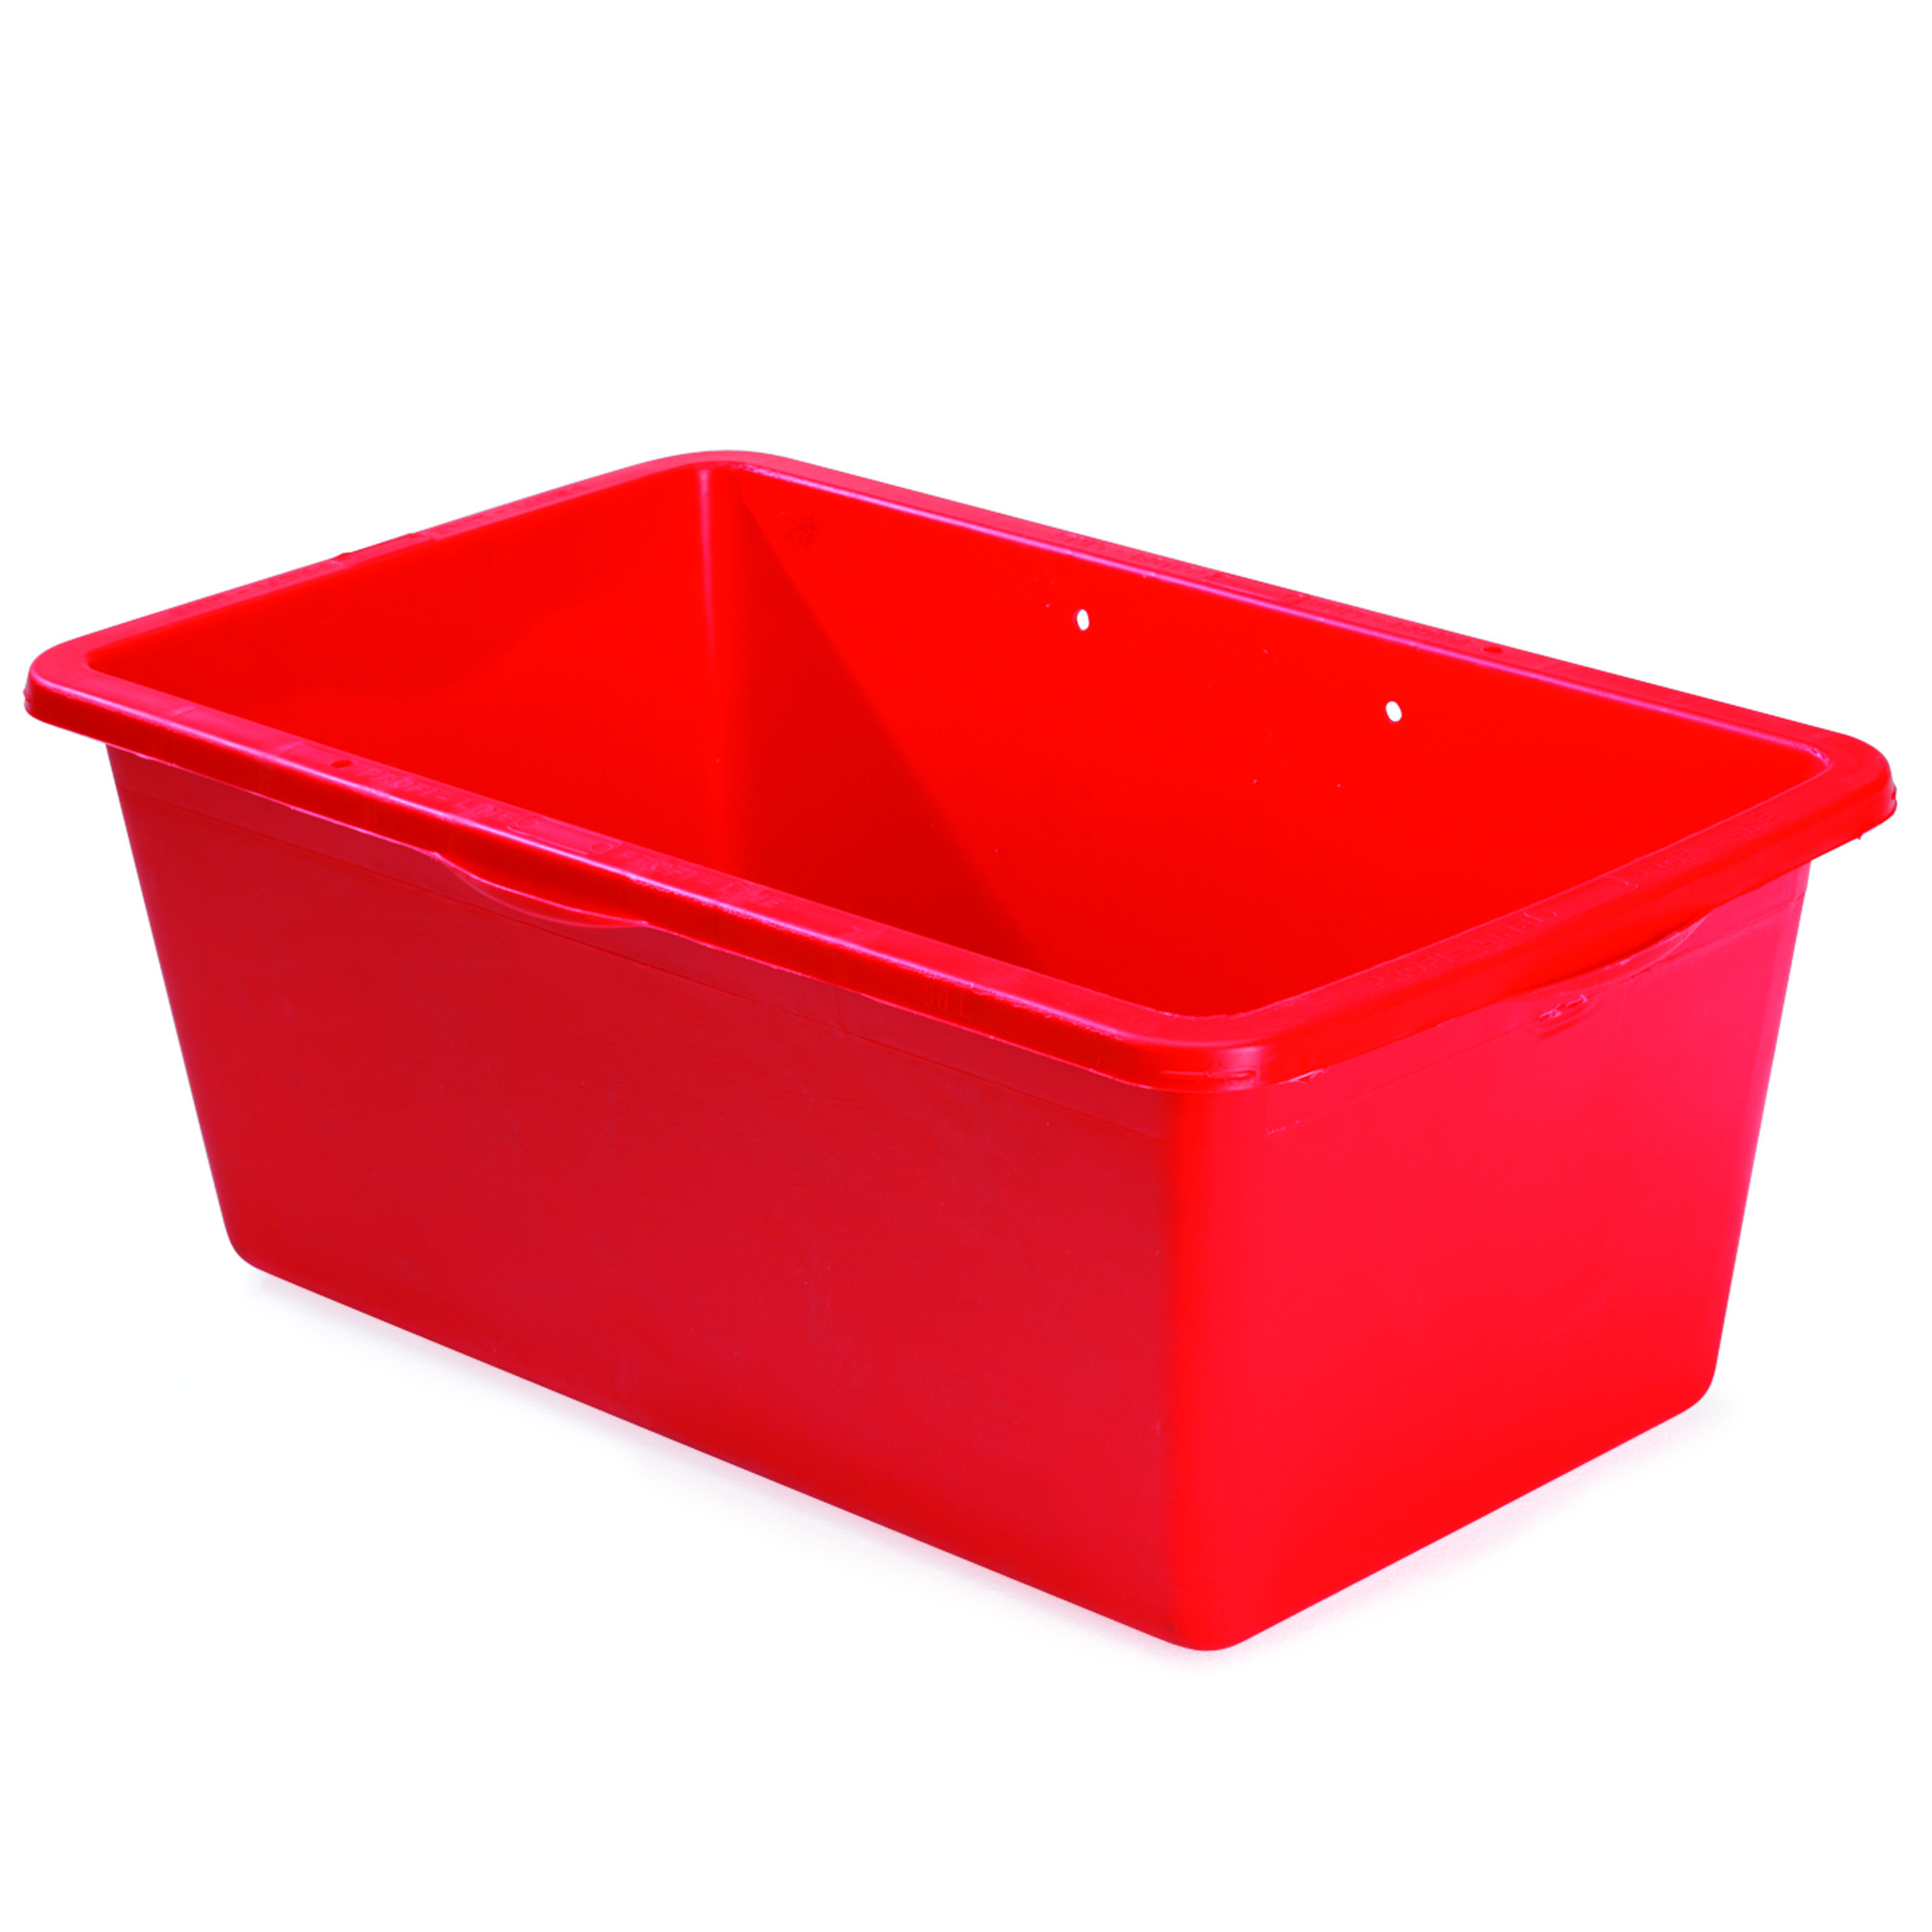 Equipment box, red